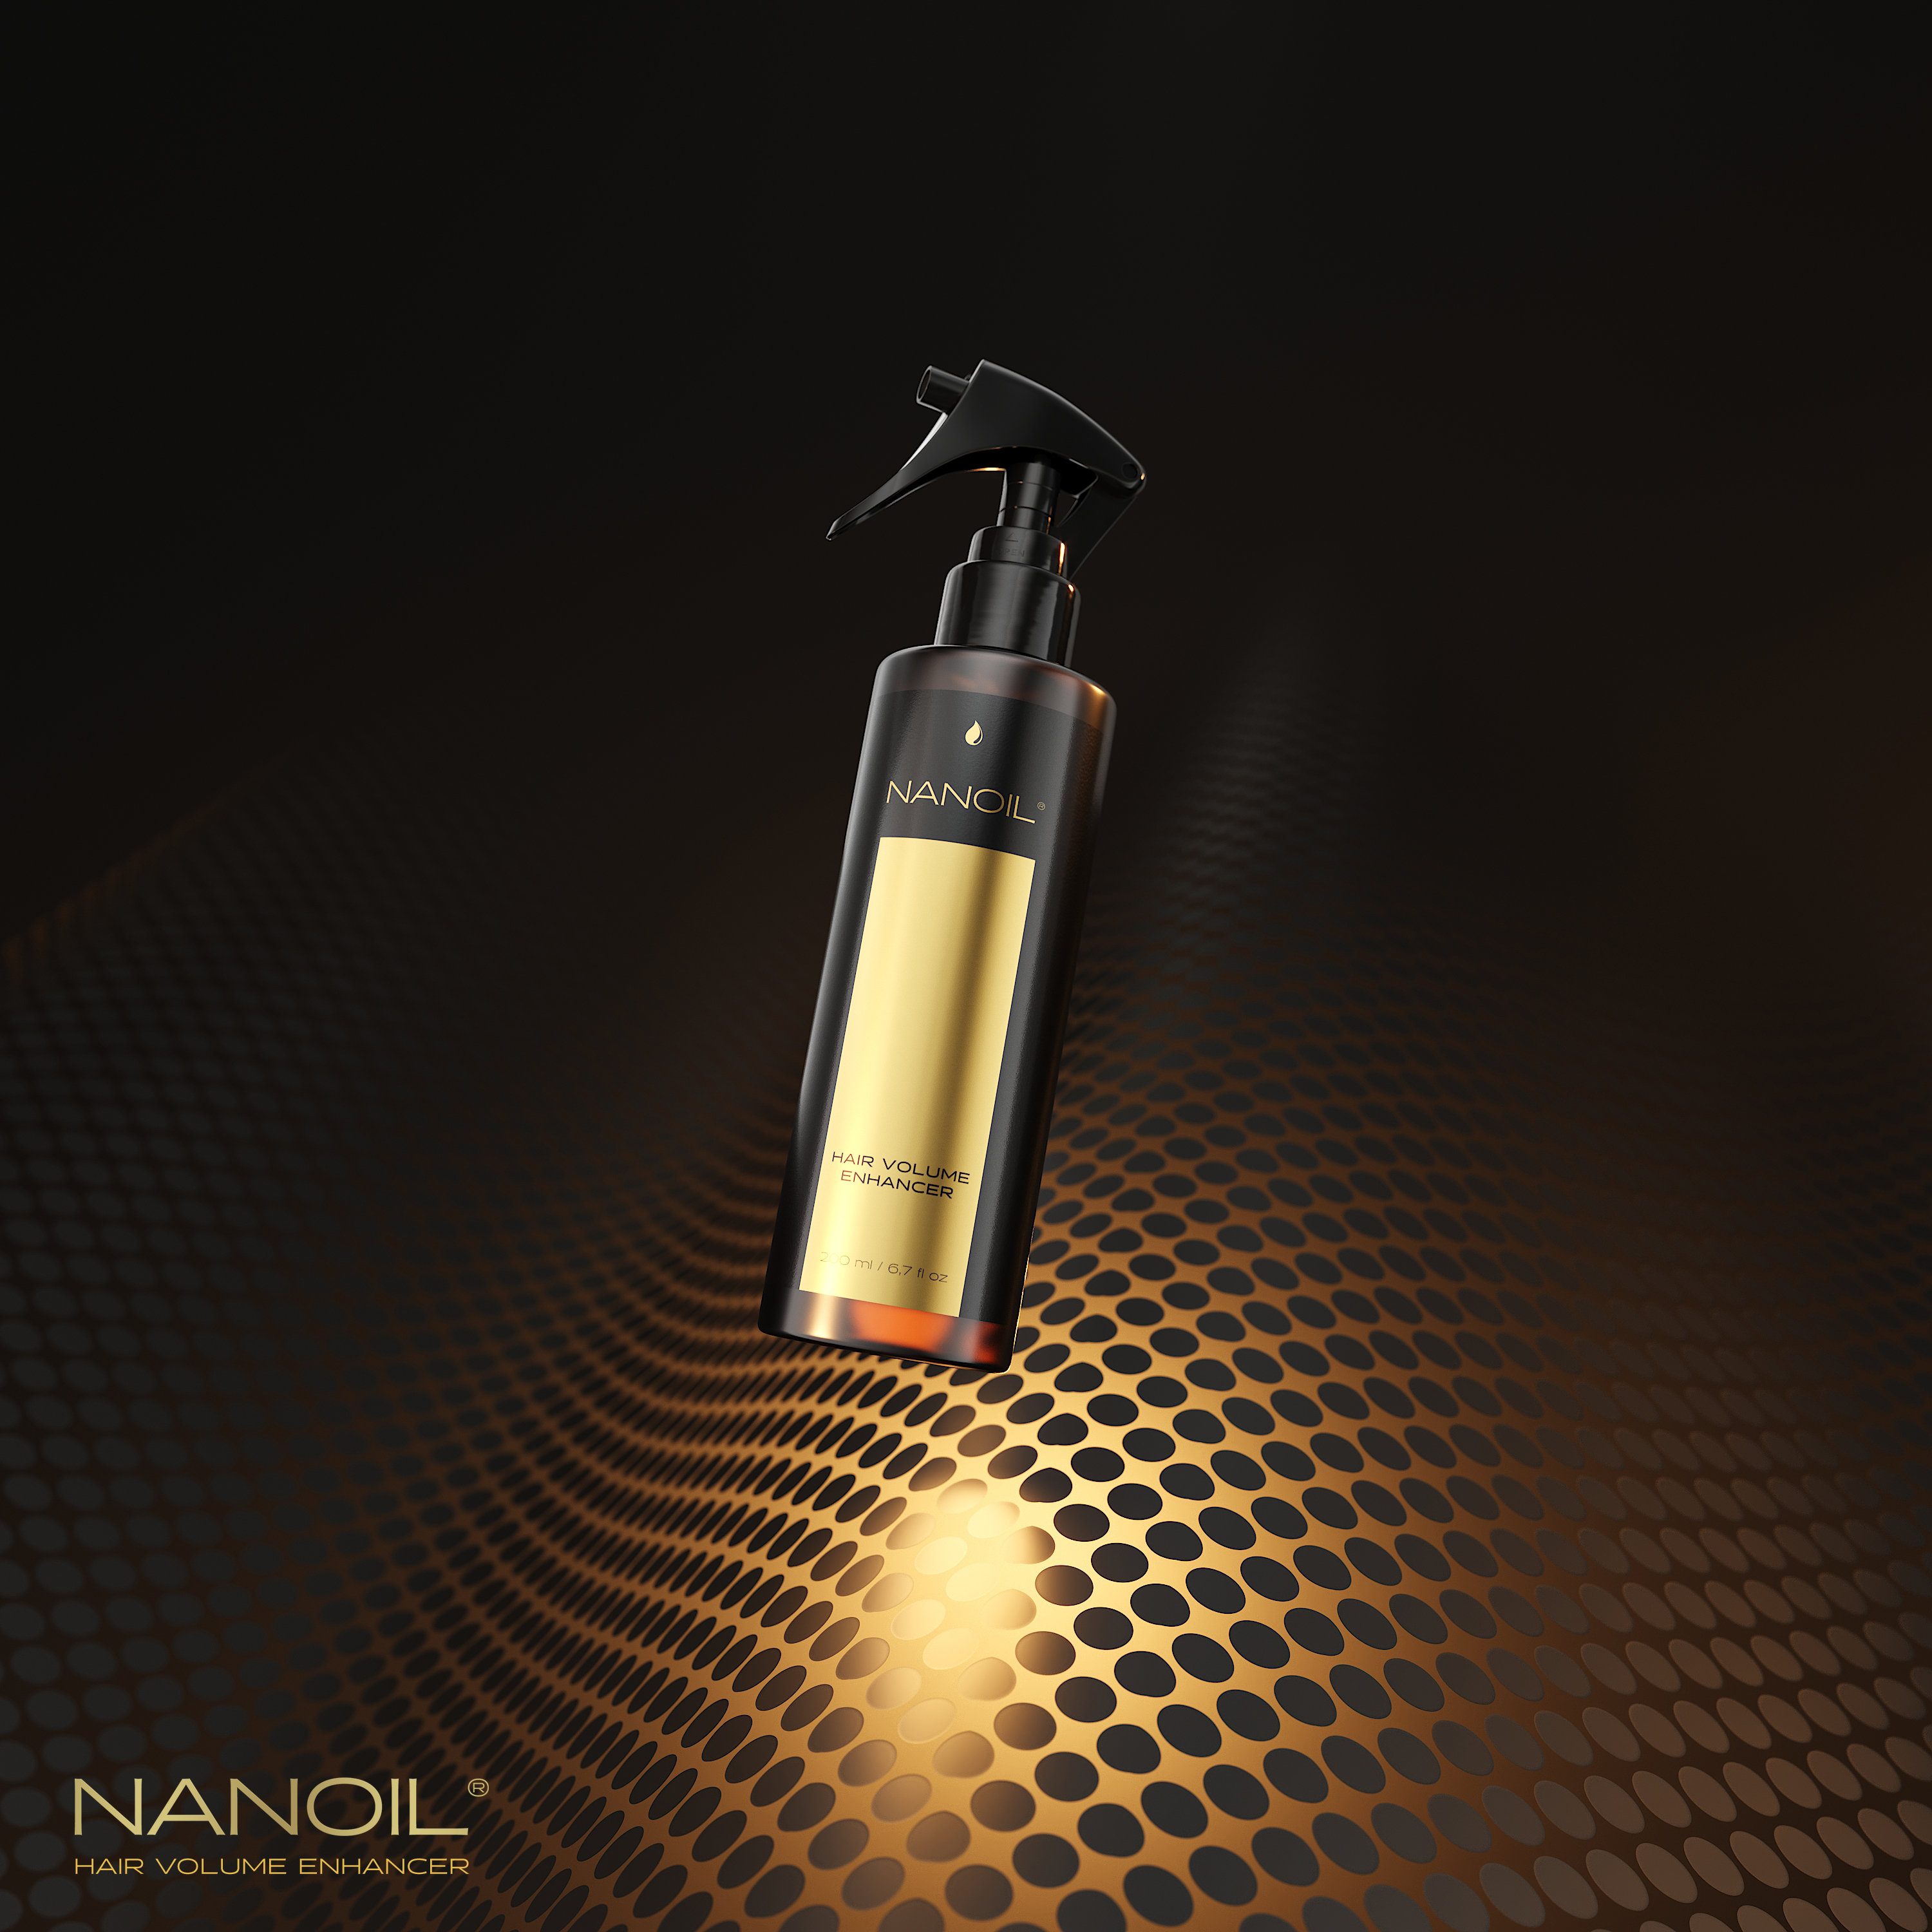 Nanoil Volumenspray Erfahrungen